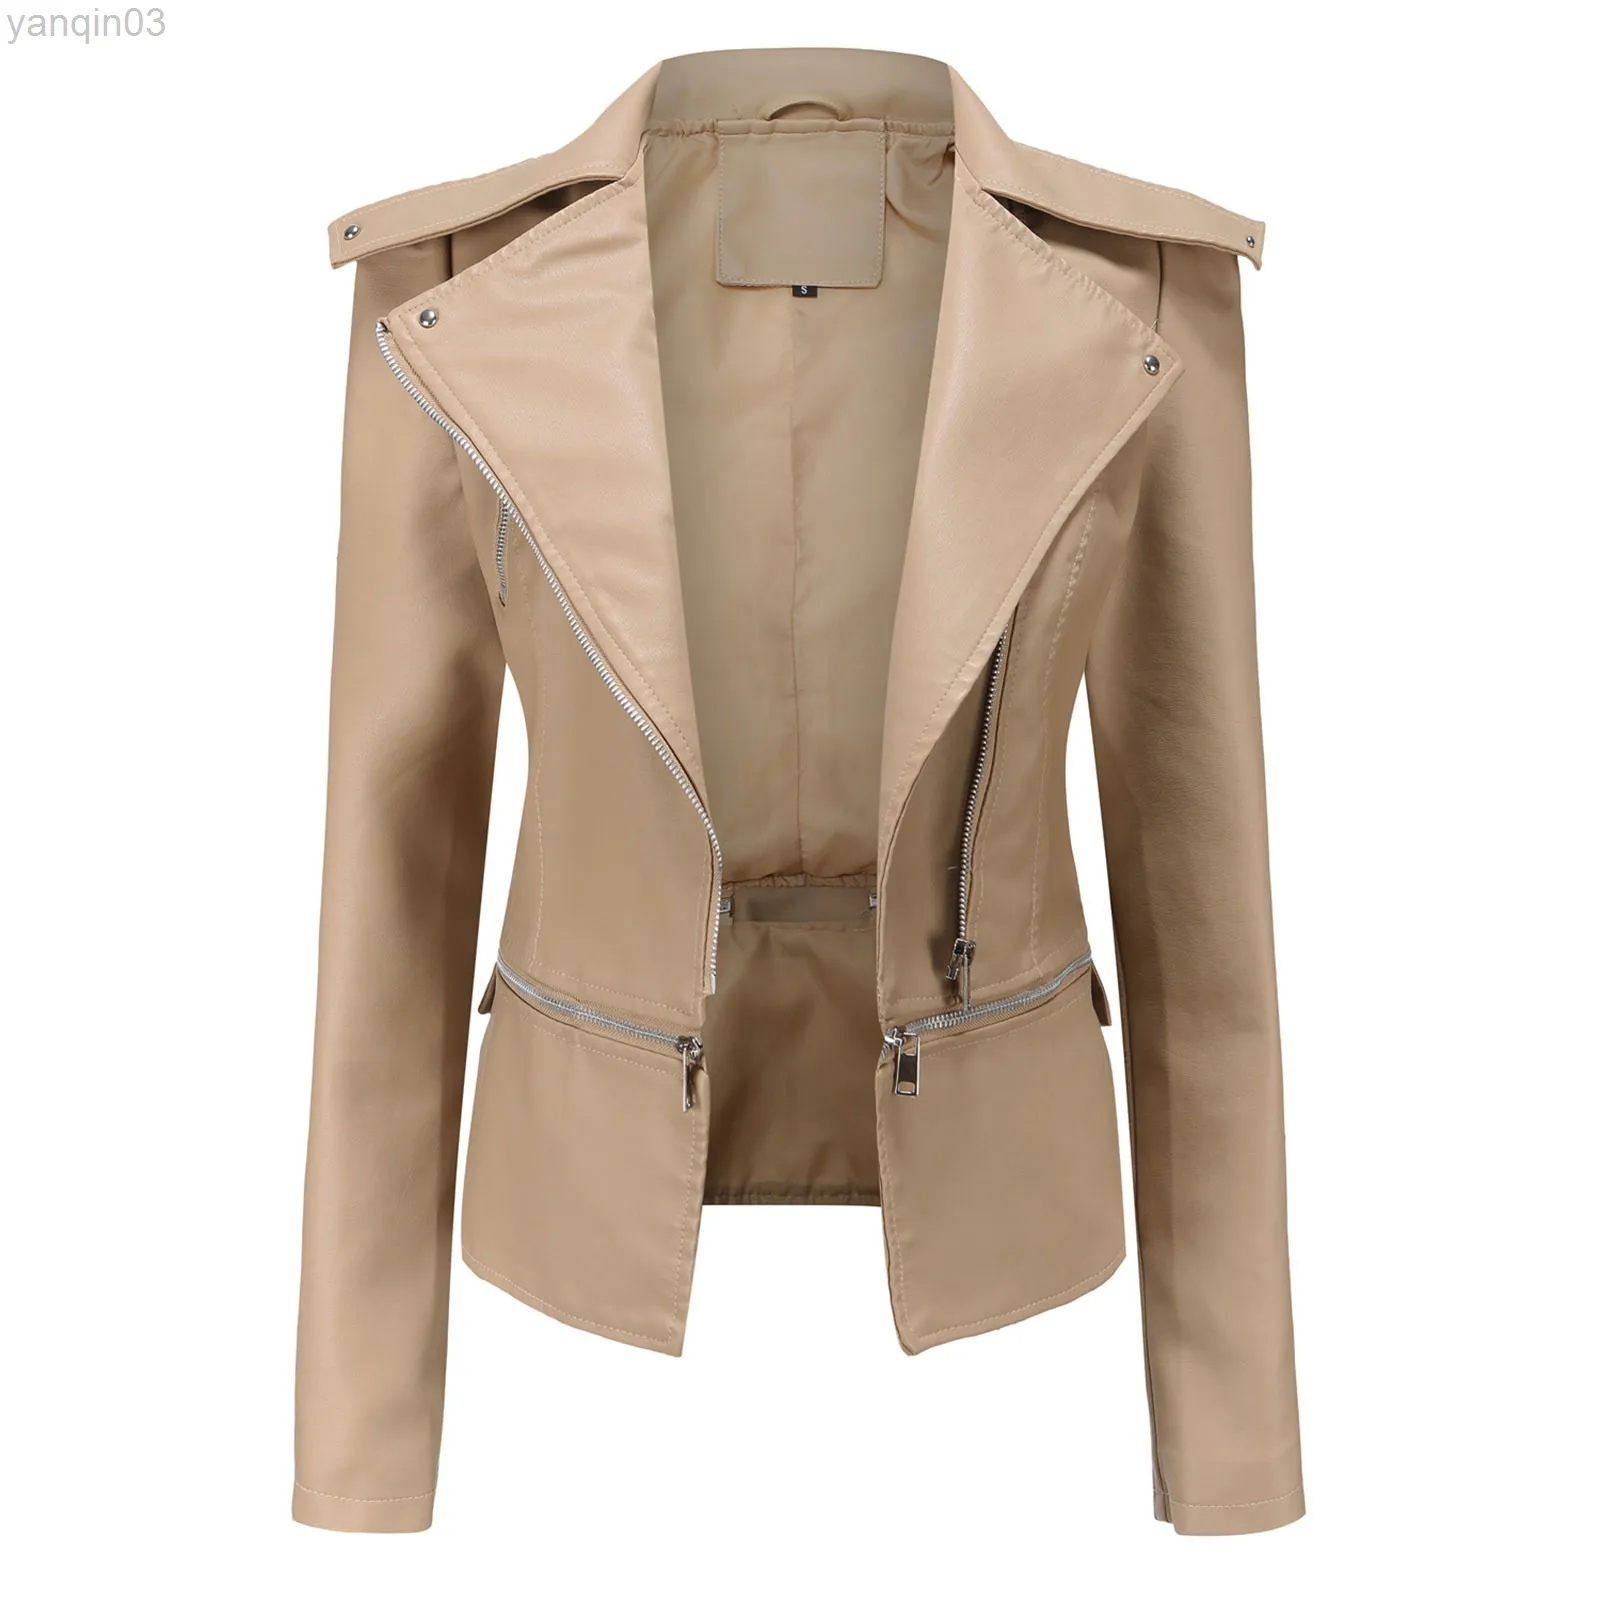 Frauen Coole Faux Leder Jacke Lange Sleeve Zipper Ausgestattet Mantel Slim Fit Herbst Mode Streetwear Kurze Bomber Jacke L220801